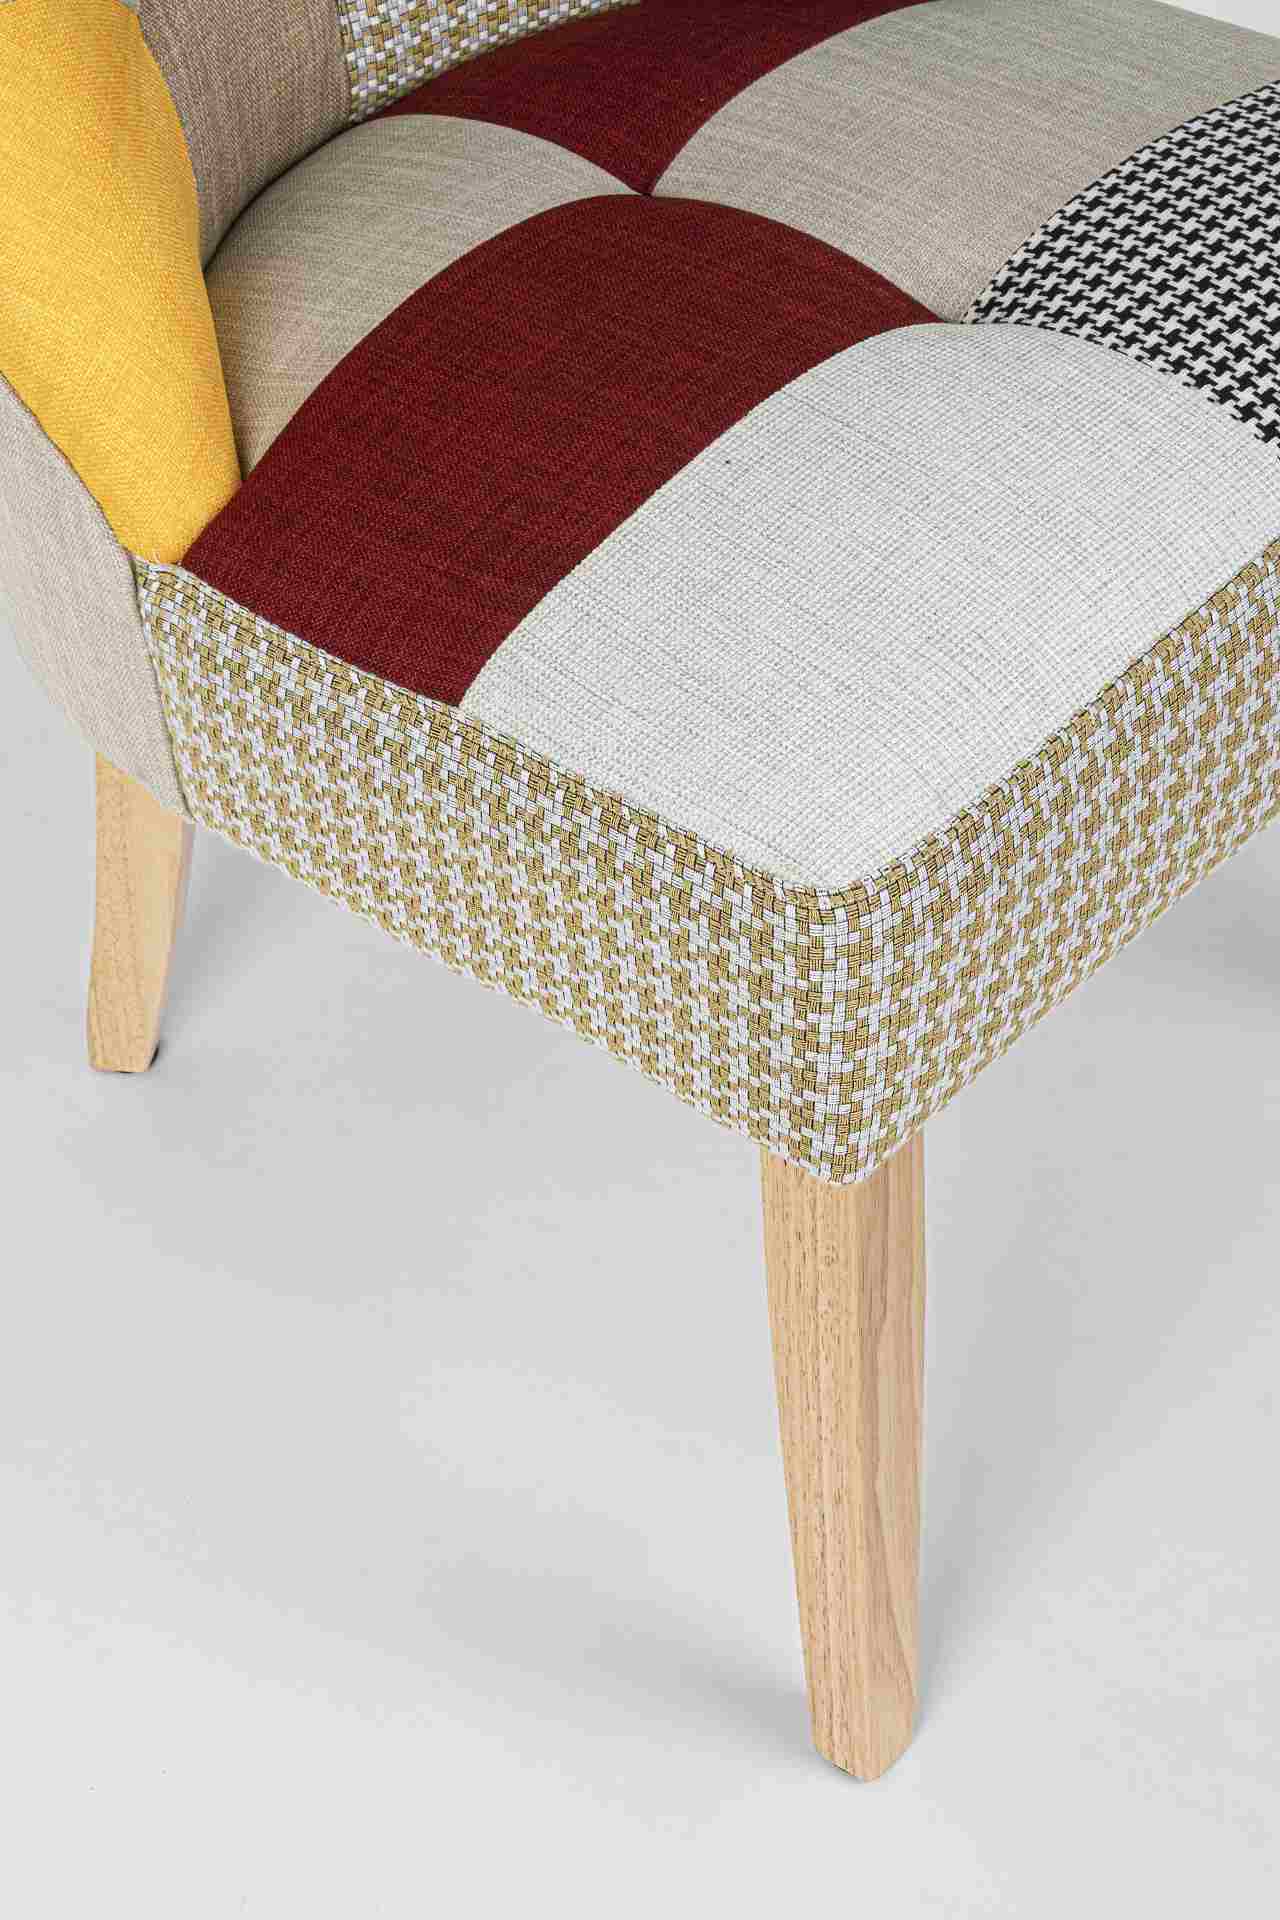 Der Esszimmerstuhl Galatea überzeugt mit seinem klassischem Design. Gefertigt wurde der Stuhl aus einem Stoff-Bezug, welcher mehrfarbig ist. Das Gestell ist aus Holz und ist natürlich gehalten. Die Sitzhöhe beträgt 47 cm.